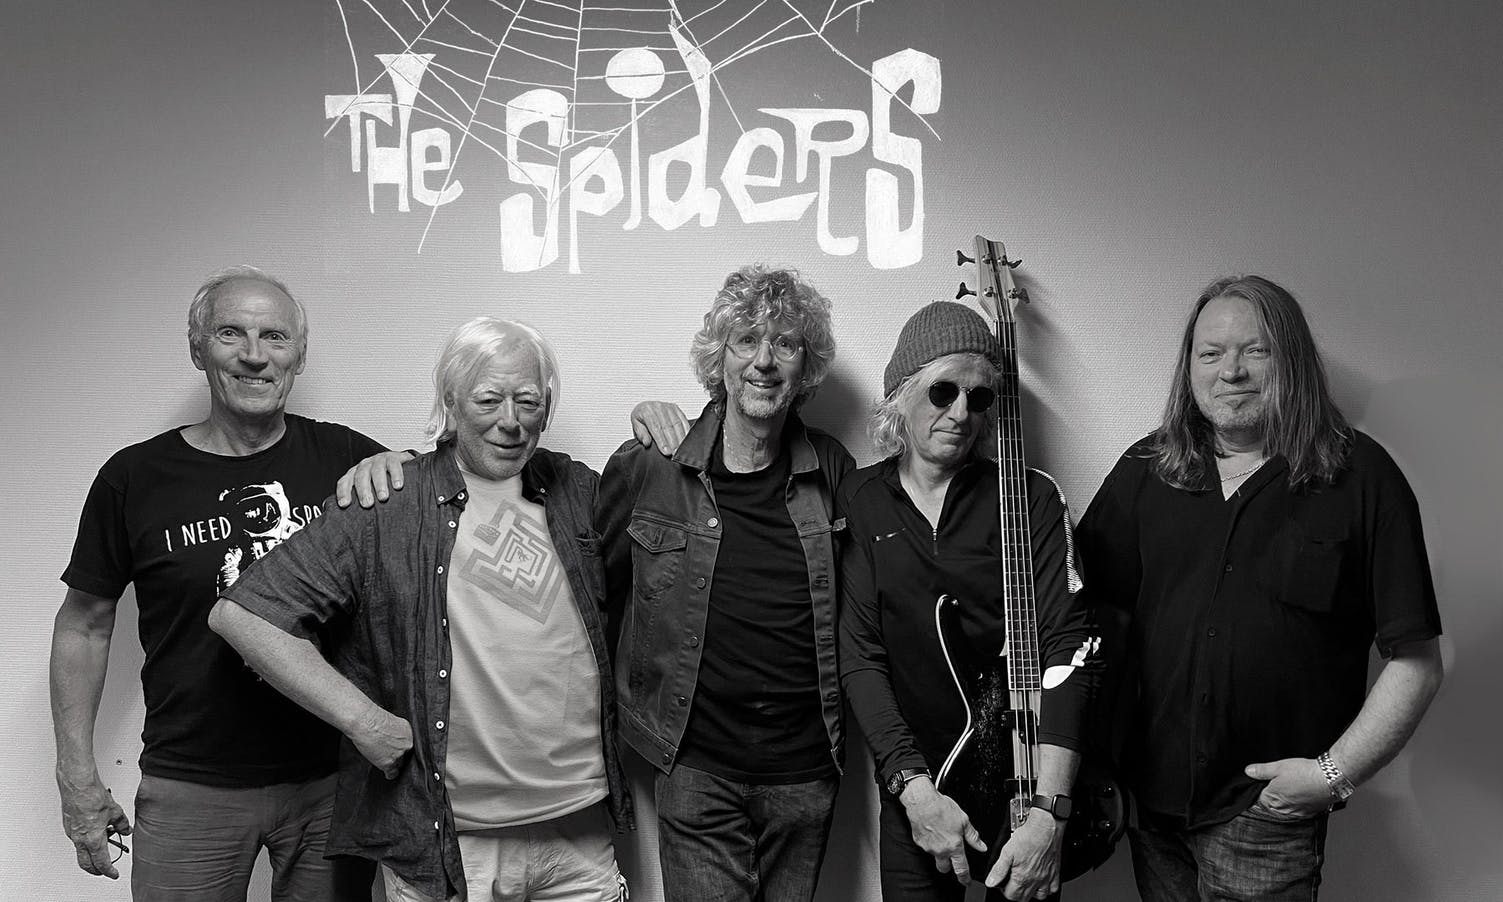 Sist The Spiders spelte i Os er for 50 (!) år sidan. 